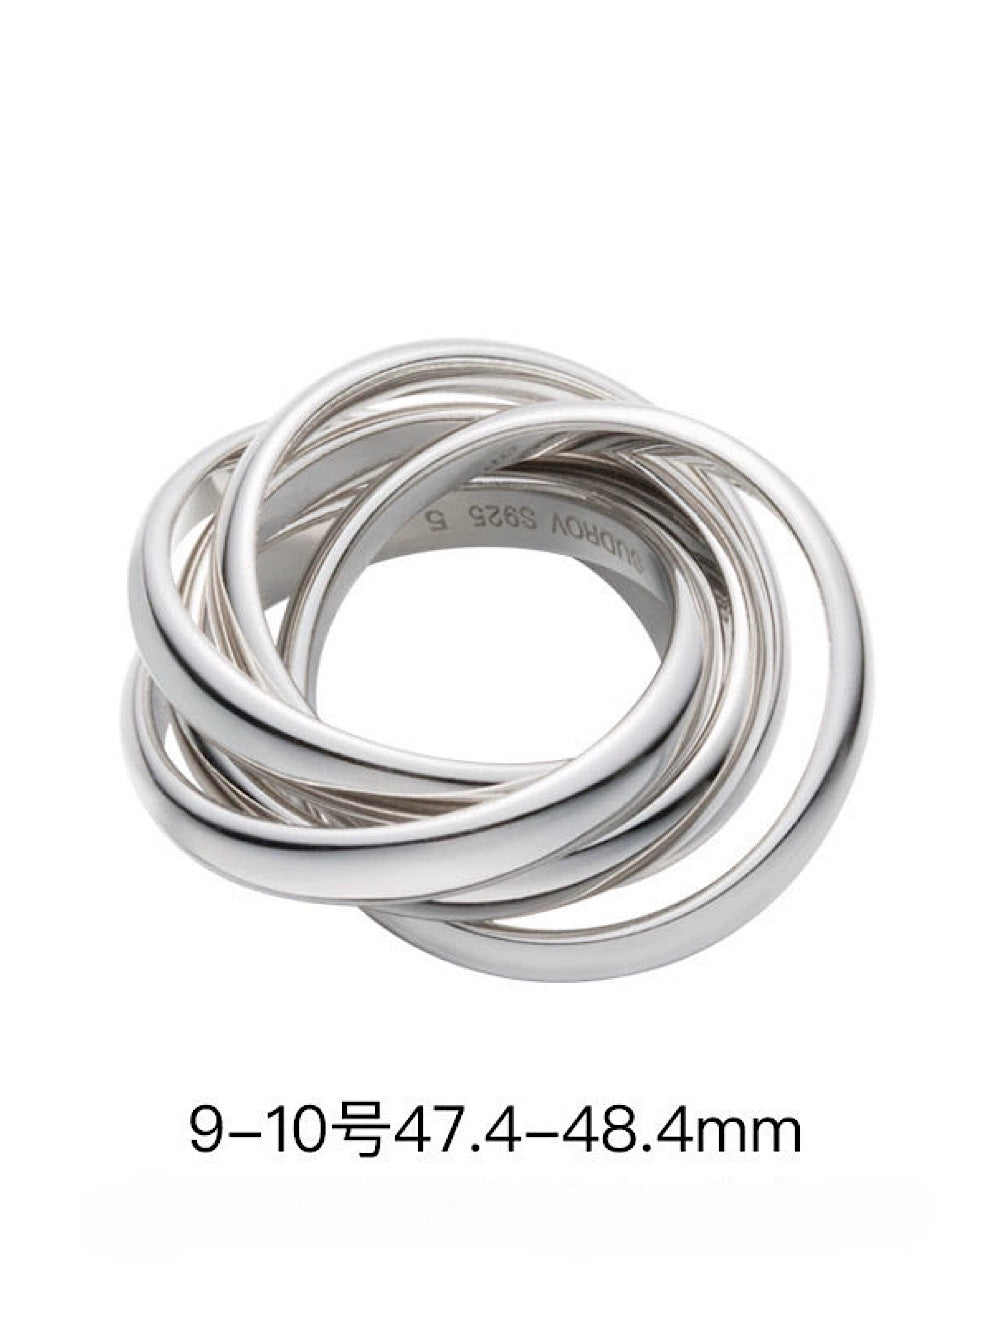 Silver index finger ring_BDHL5138